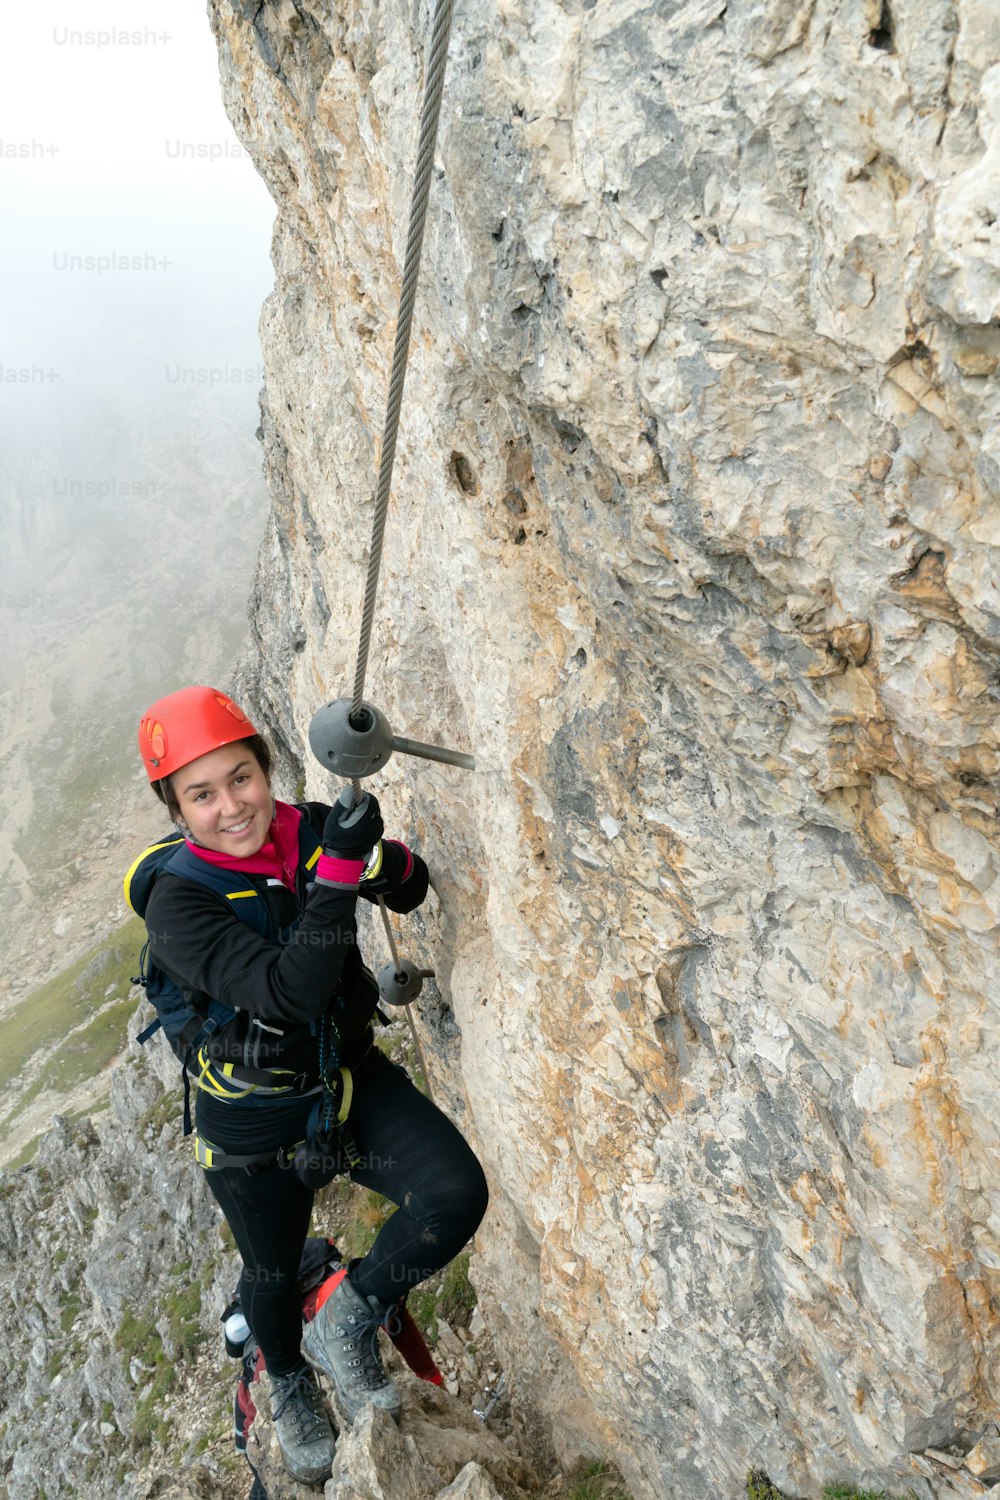 giovane attraente alpinista su una ripida ed esposta via ferrata in Alta Badia in Alto Adige nelle Dolomiti italiane